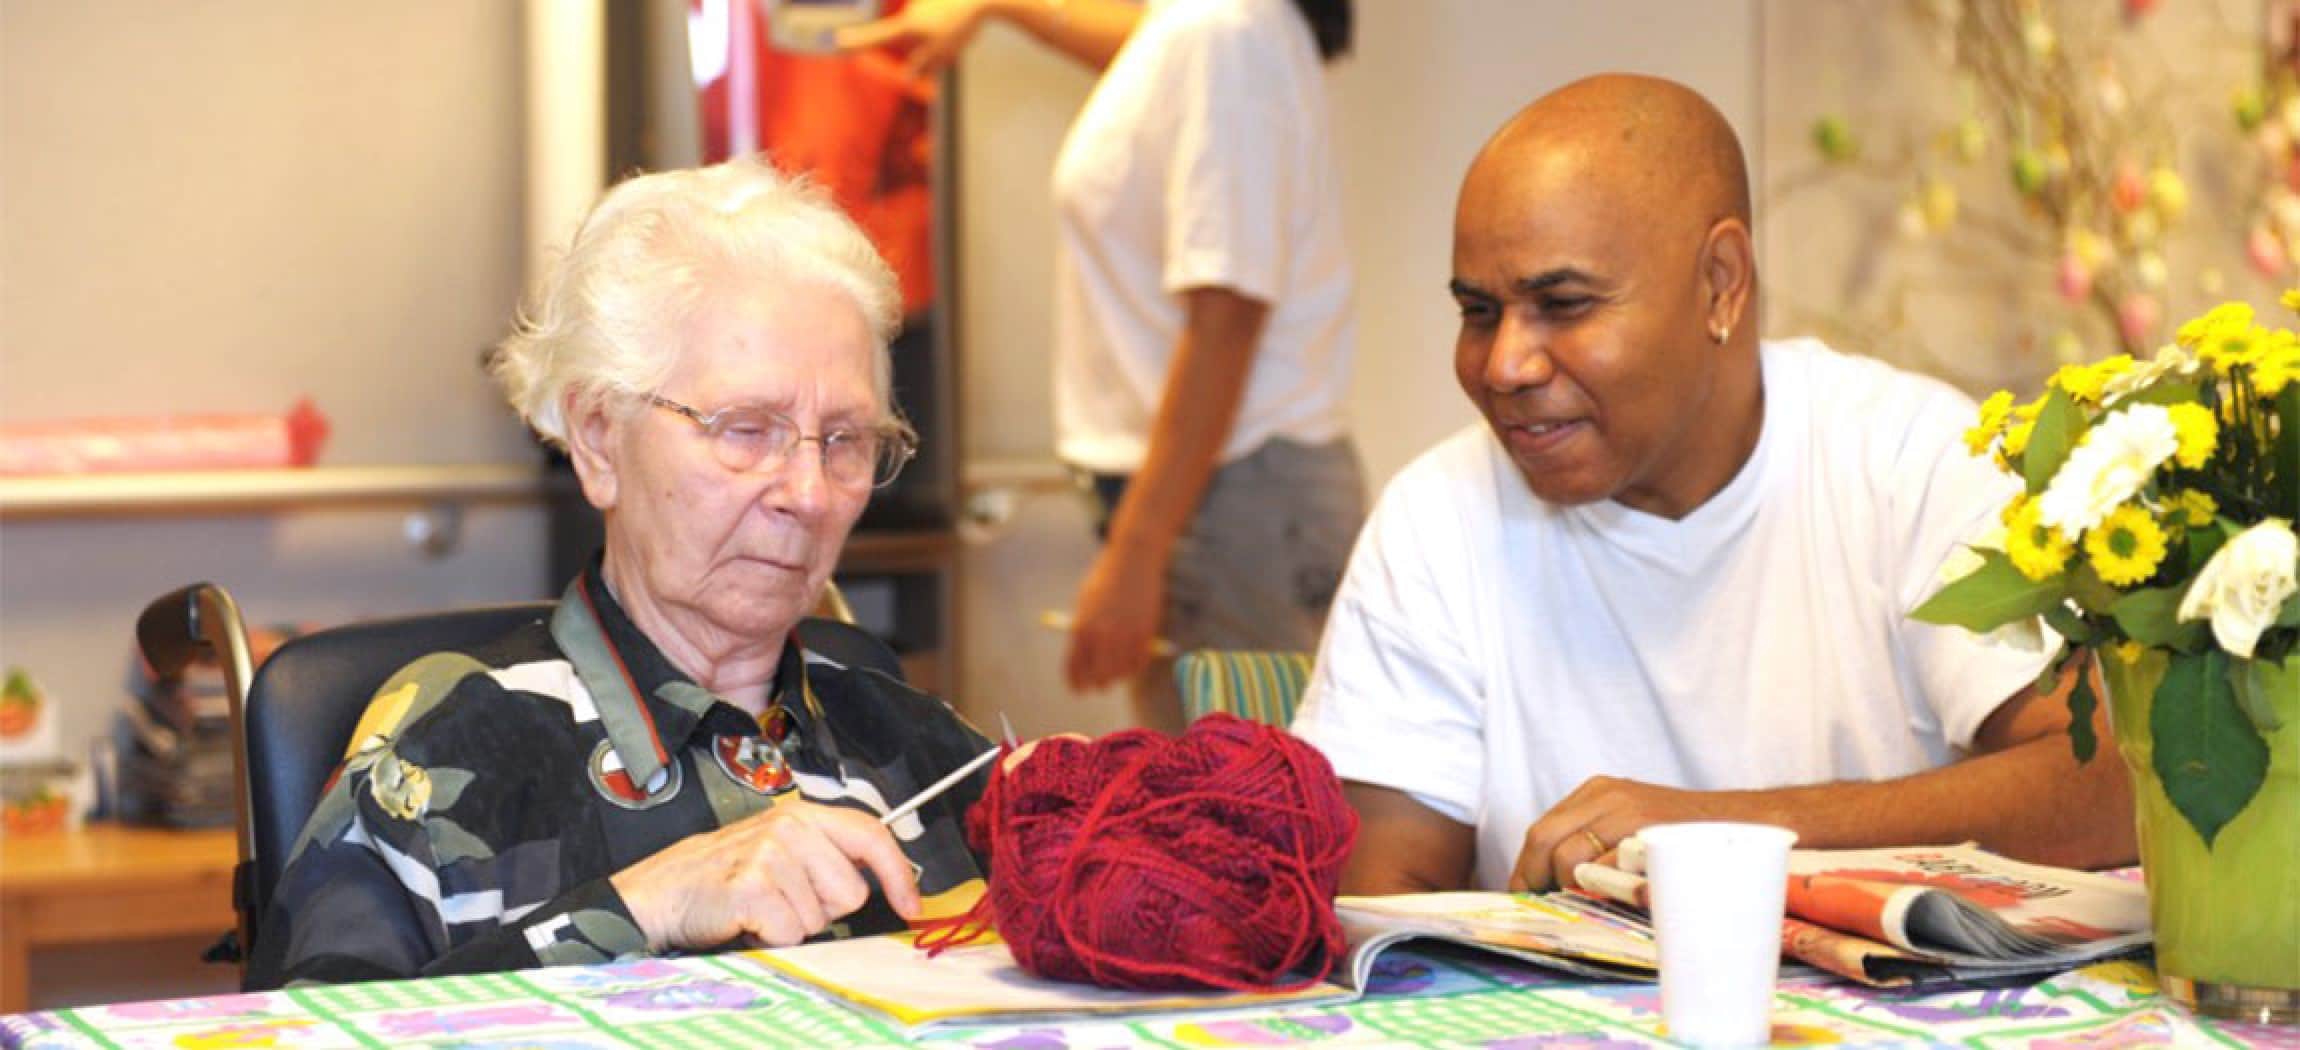 Mannelijke verzorgende kijkt naar oude vrouw met breiwerk en bol wol